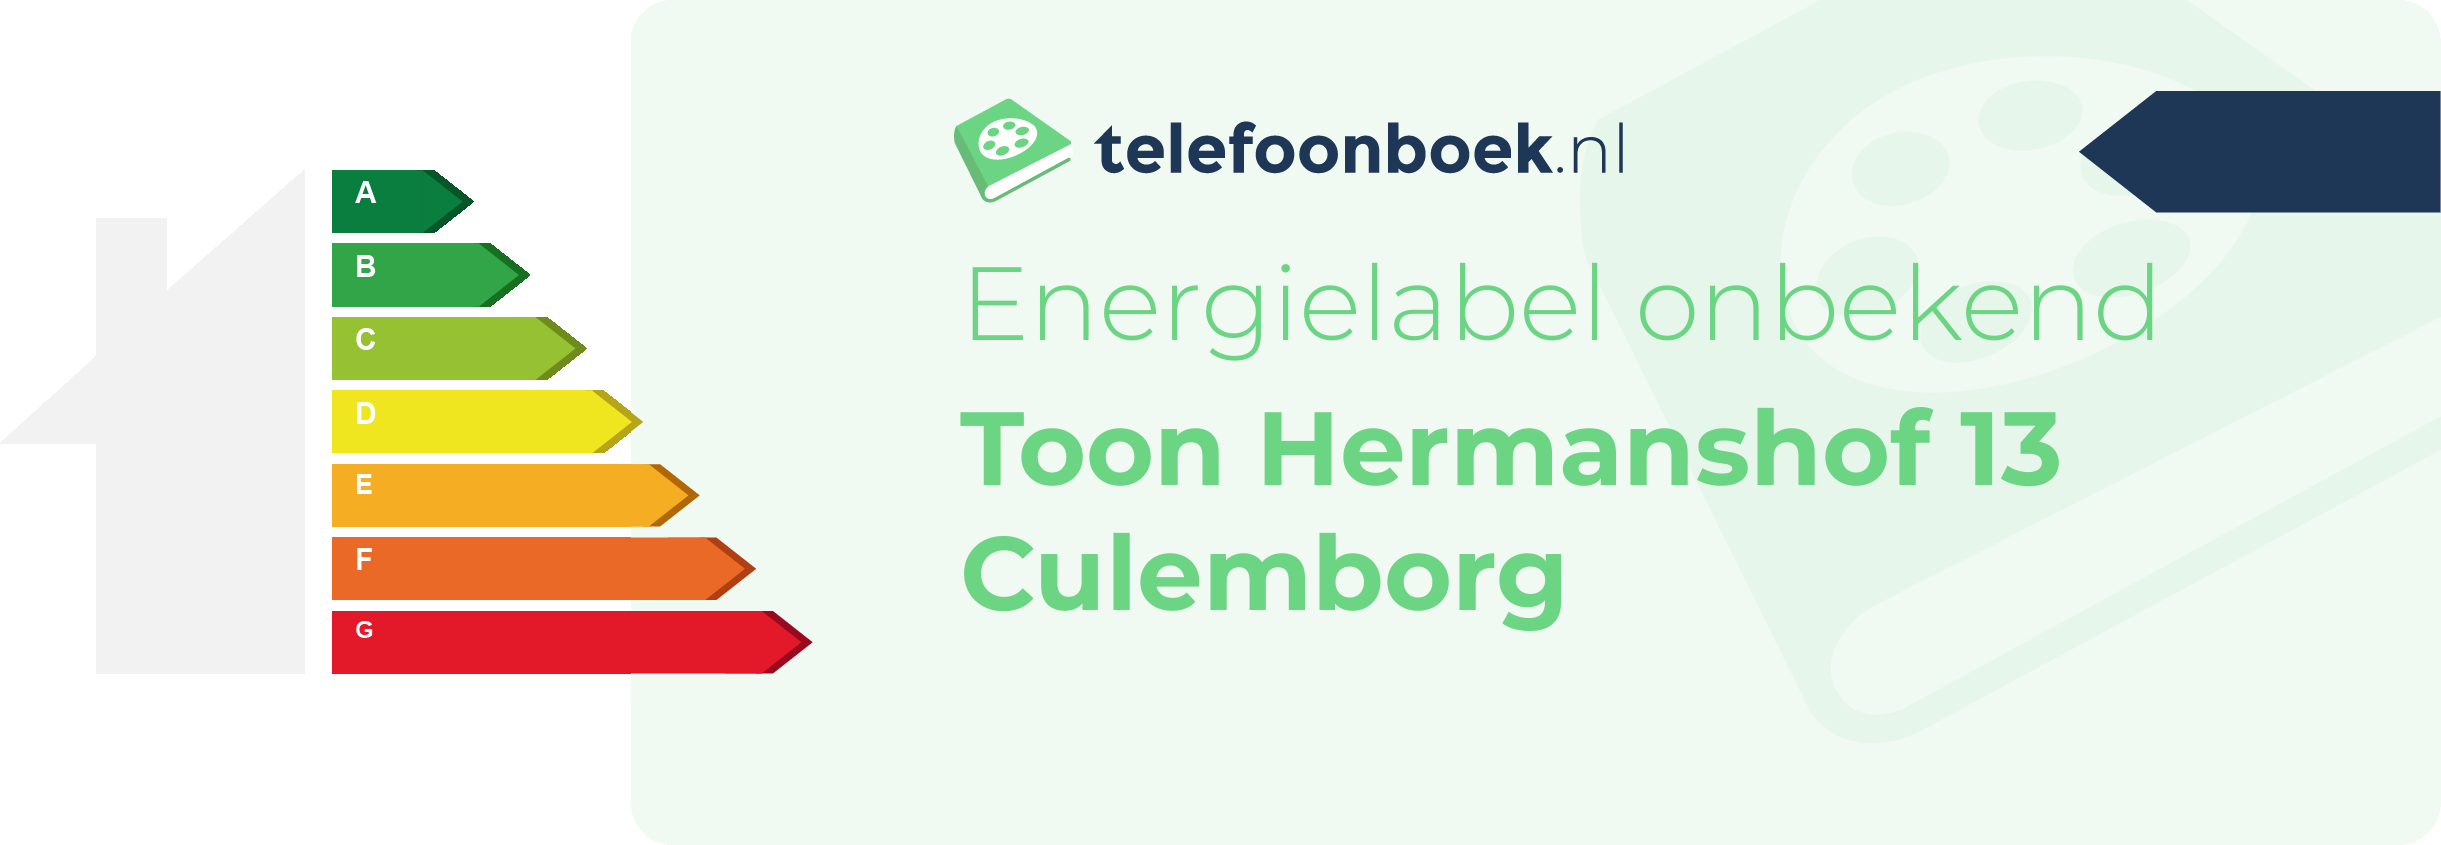 Energielabel Toon Hermanshof 13 Culemborg